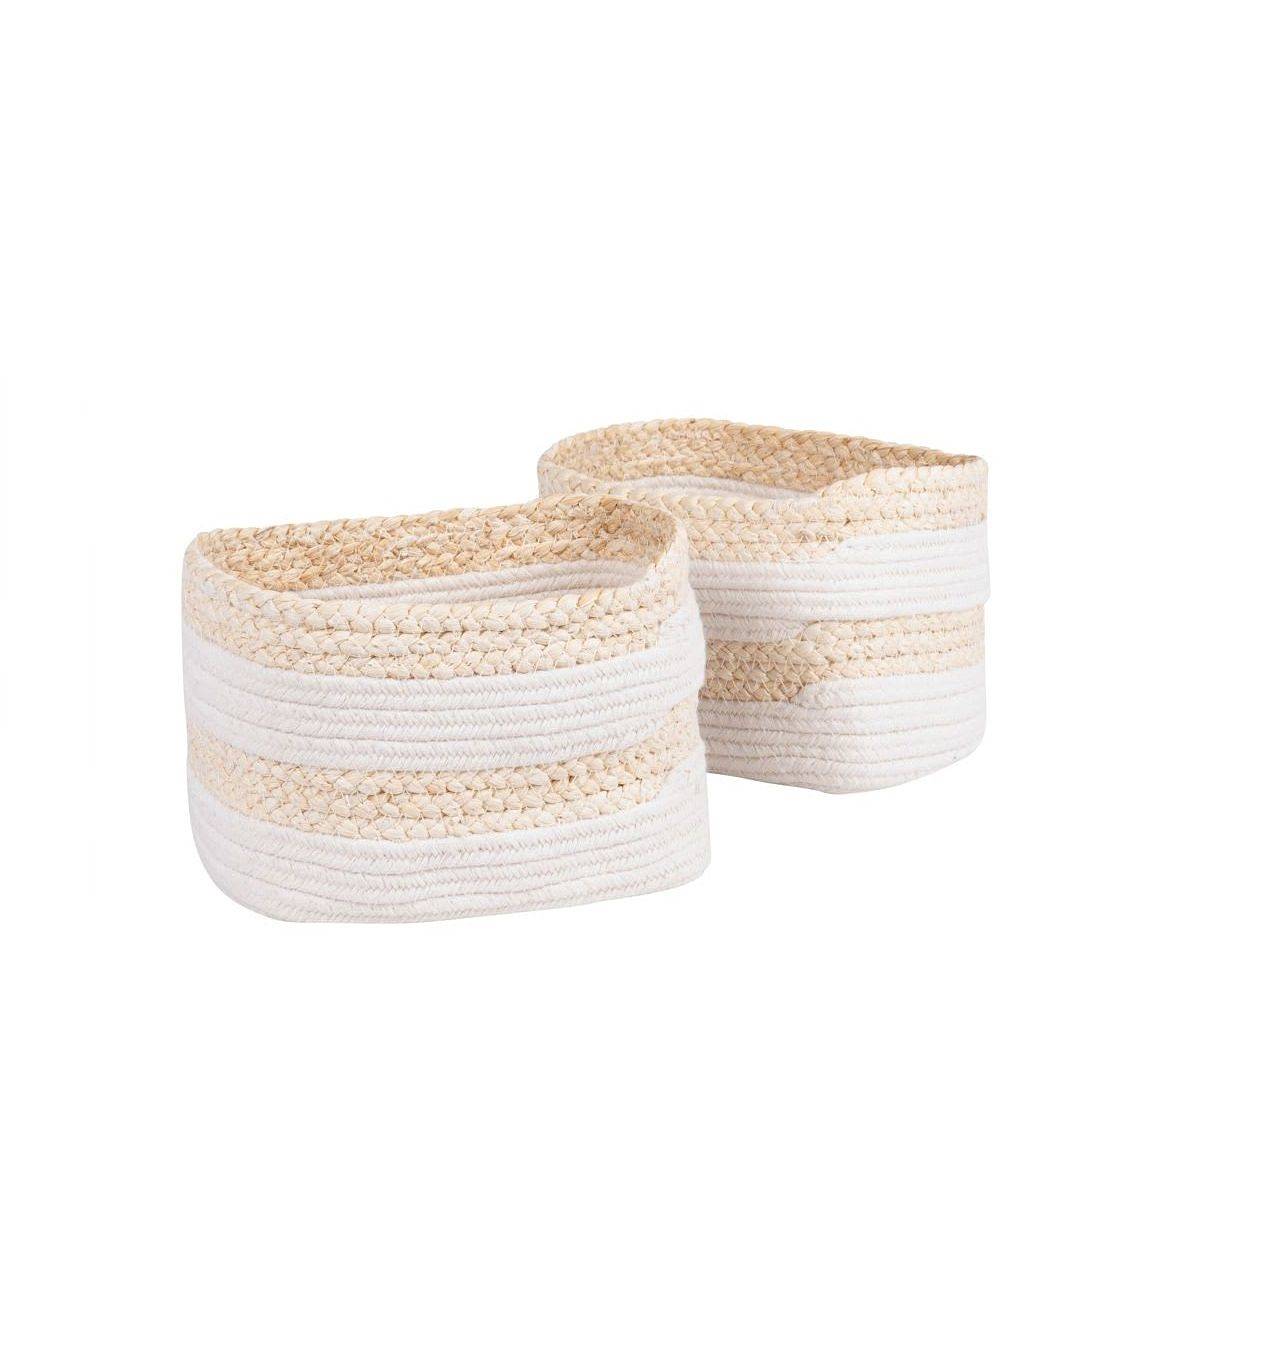 Muebles para baños pequeños cestas de fibra de maíz y algodón blanco Maisons du monde, 22,99€